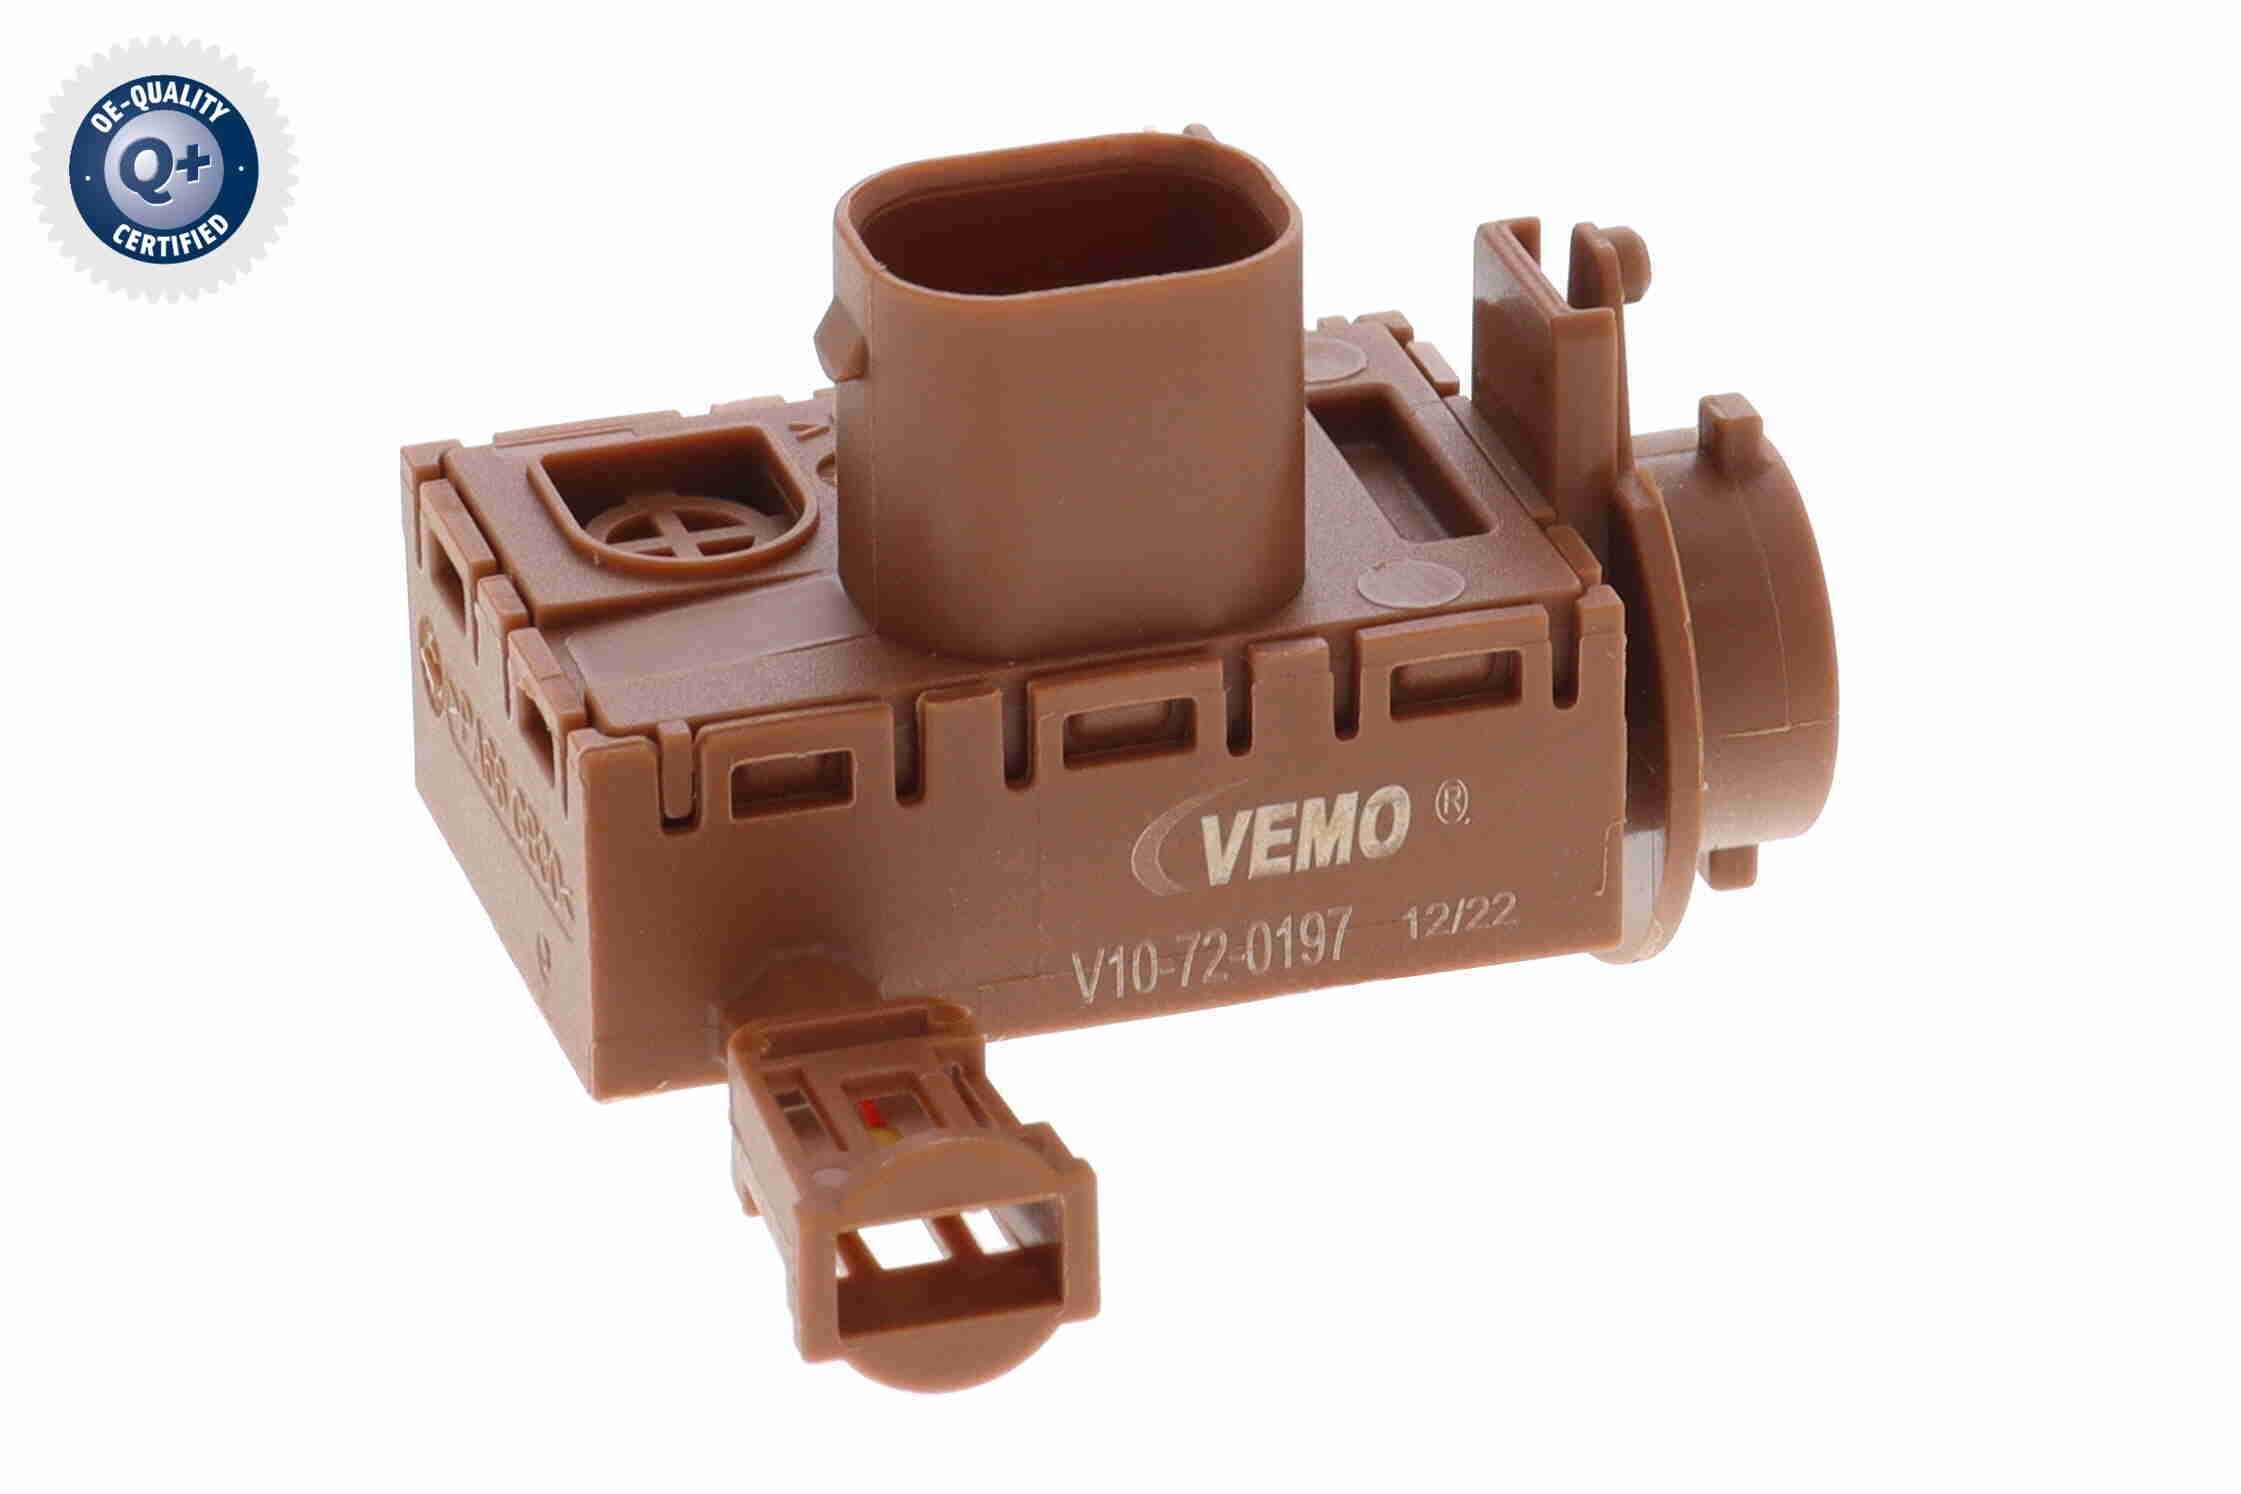 VEMO V10-72-0197 Air Quality Sensor